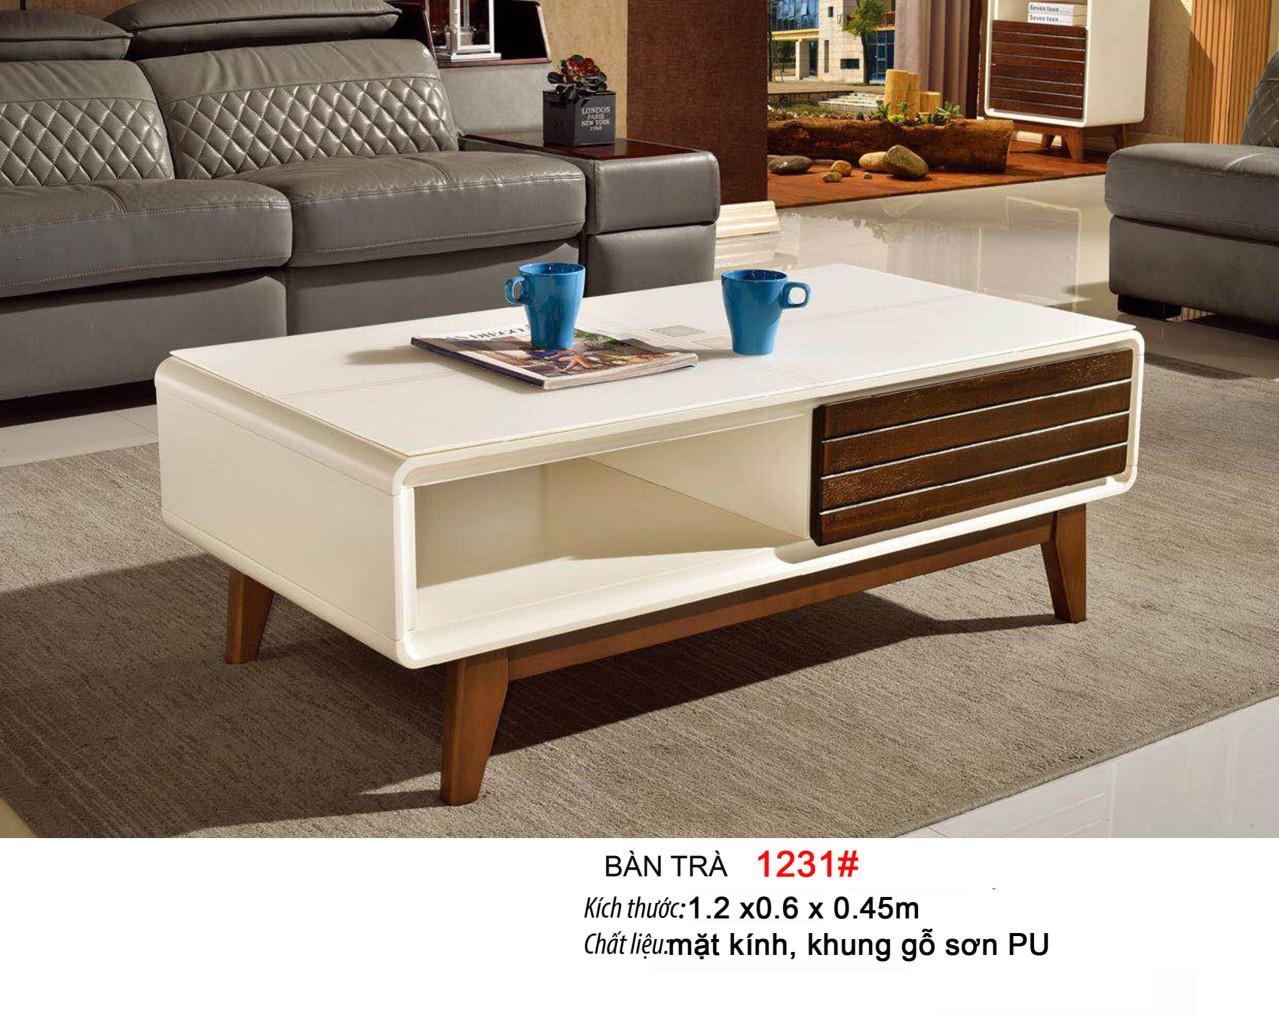 Bàn sofa mặt kính cường lực Mina Furniture MN-1231# (1200*600*450)